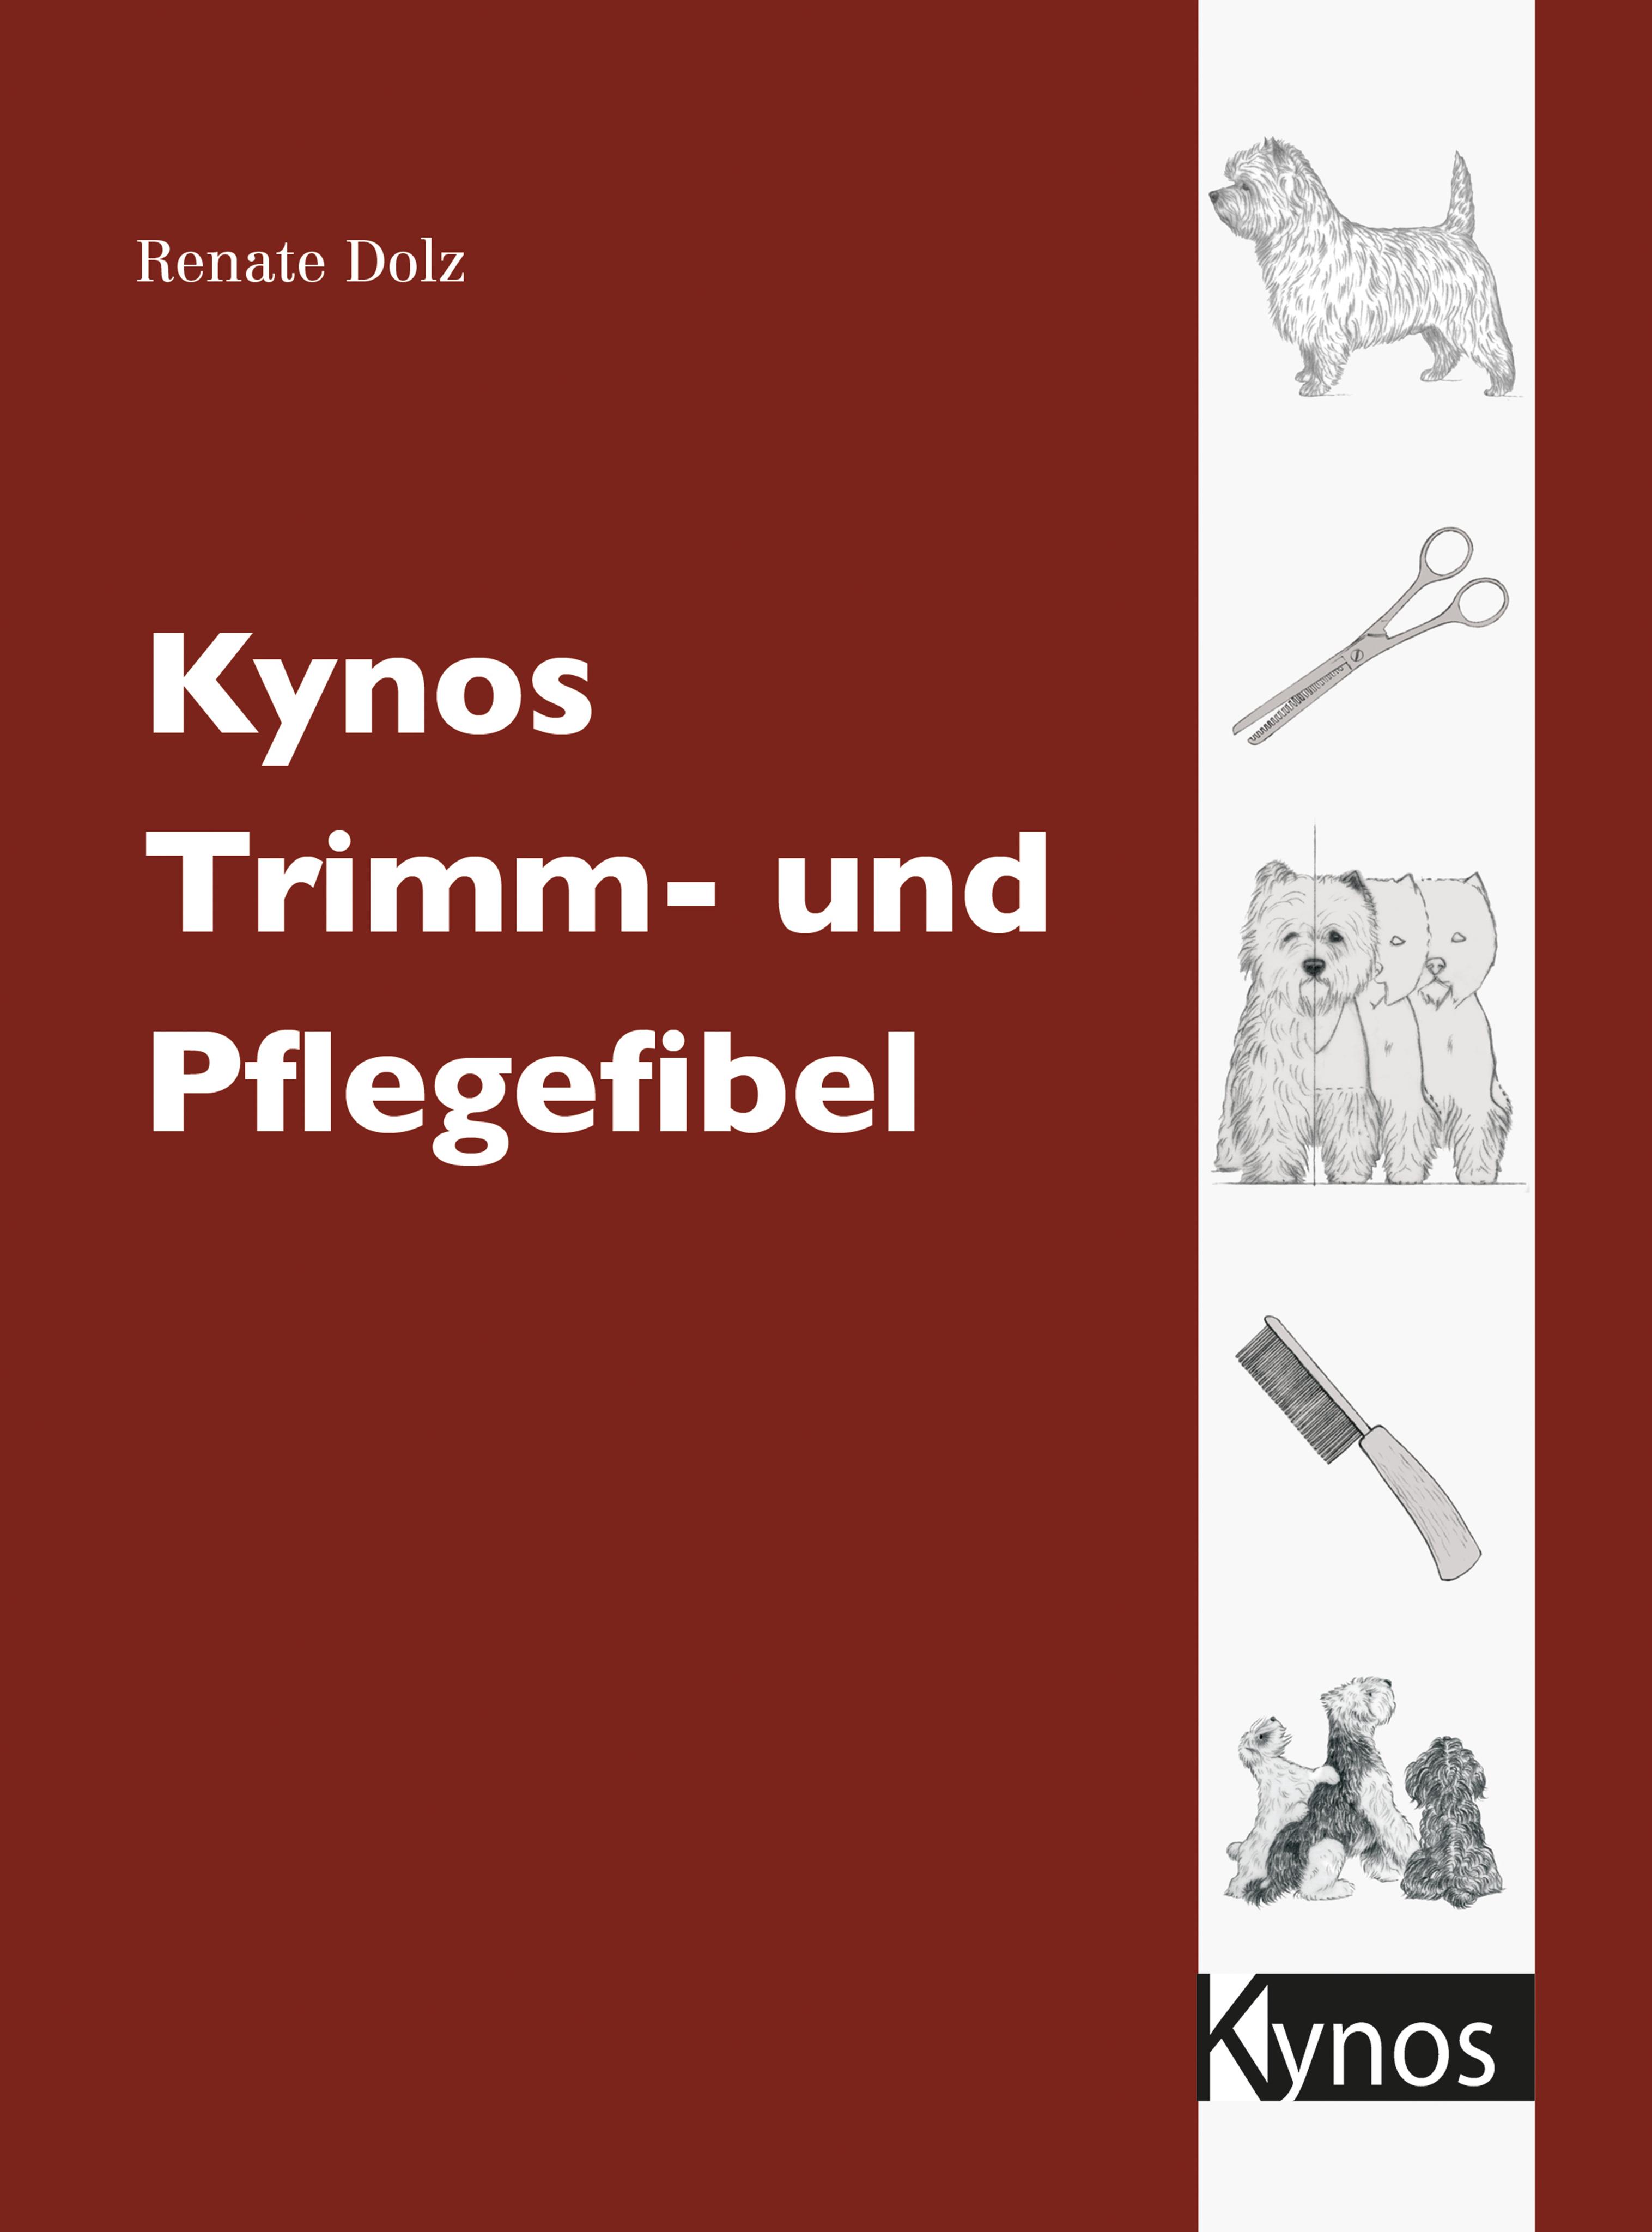 Kynos Trimm- und Pflegefibel Das besondere Hundebuch